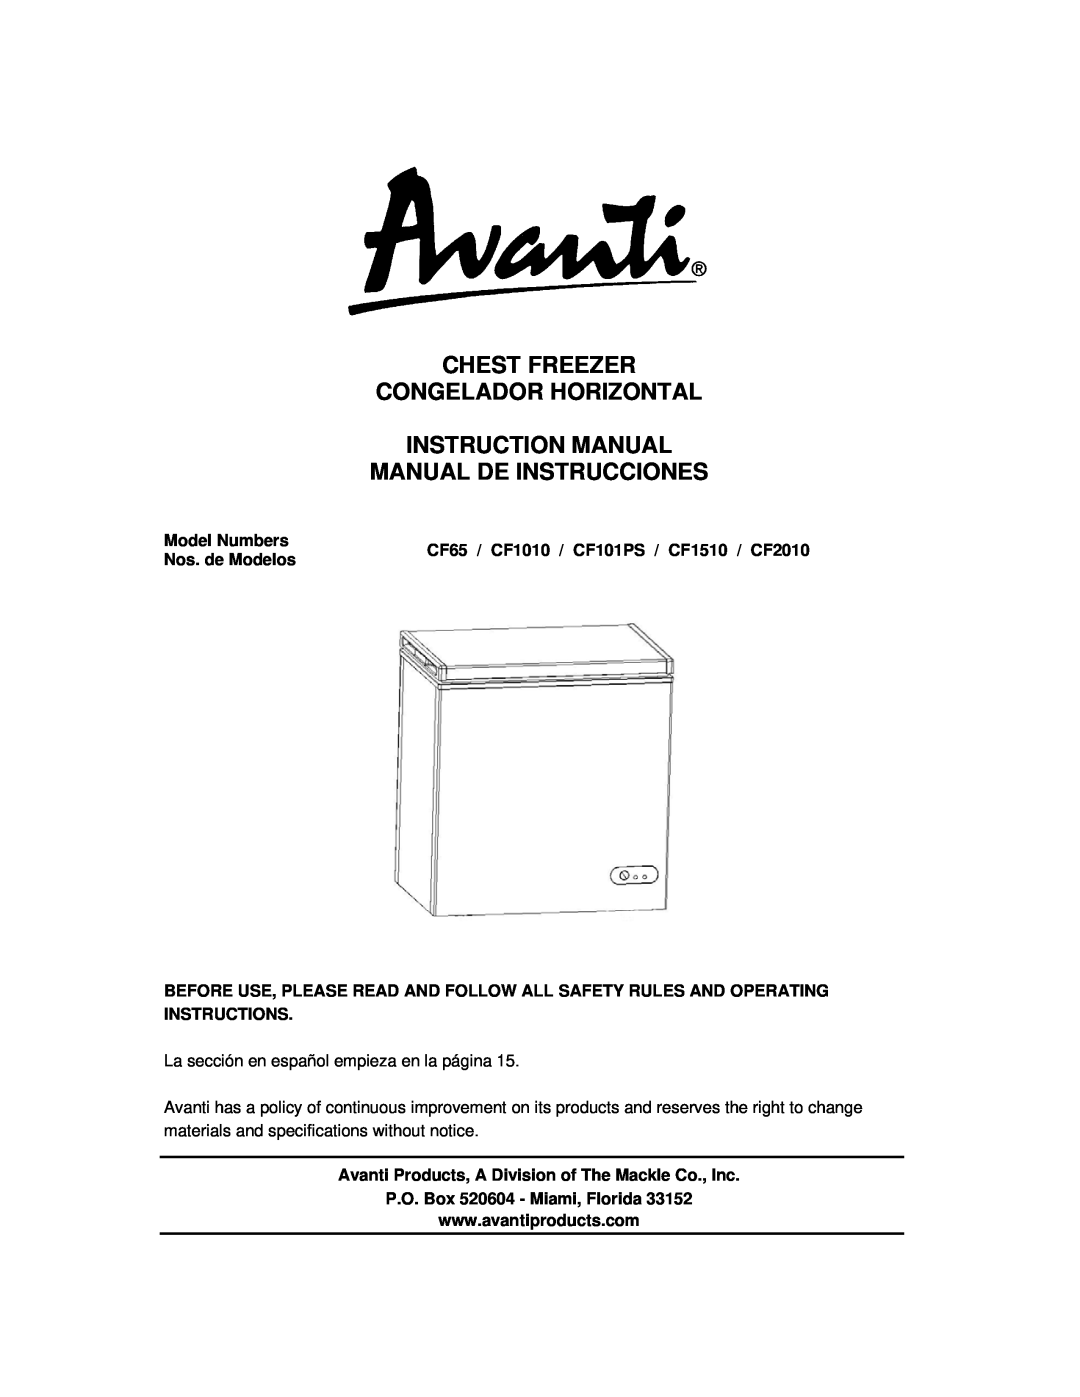 Avanti CF101PS, CF65, CF1510, CF1010 instruction manual Chest Freezer Congelador Horizontal, Model Numbers, Nos. de Modelos 